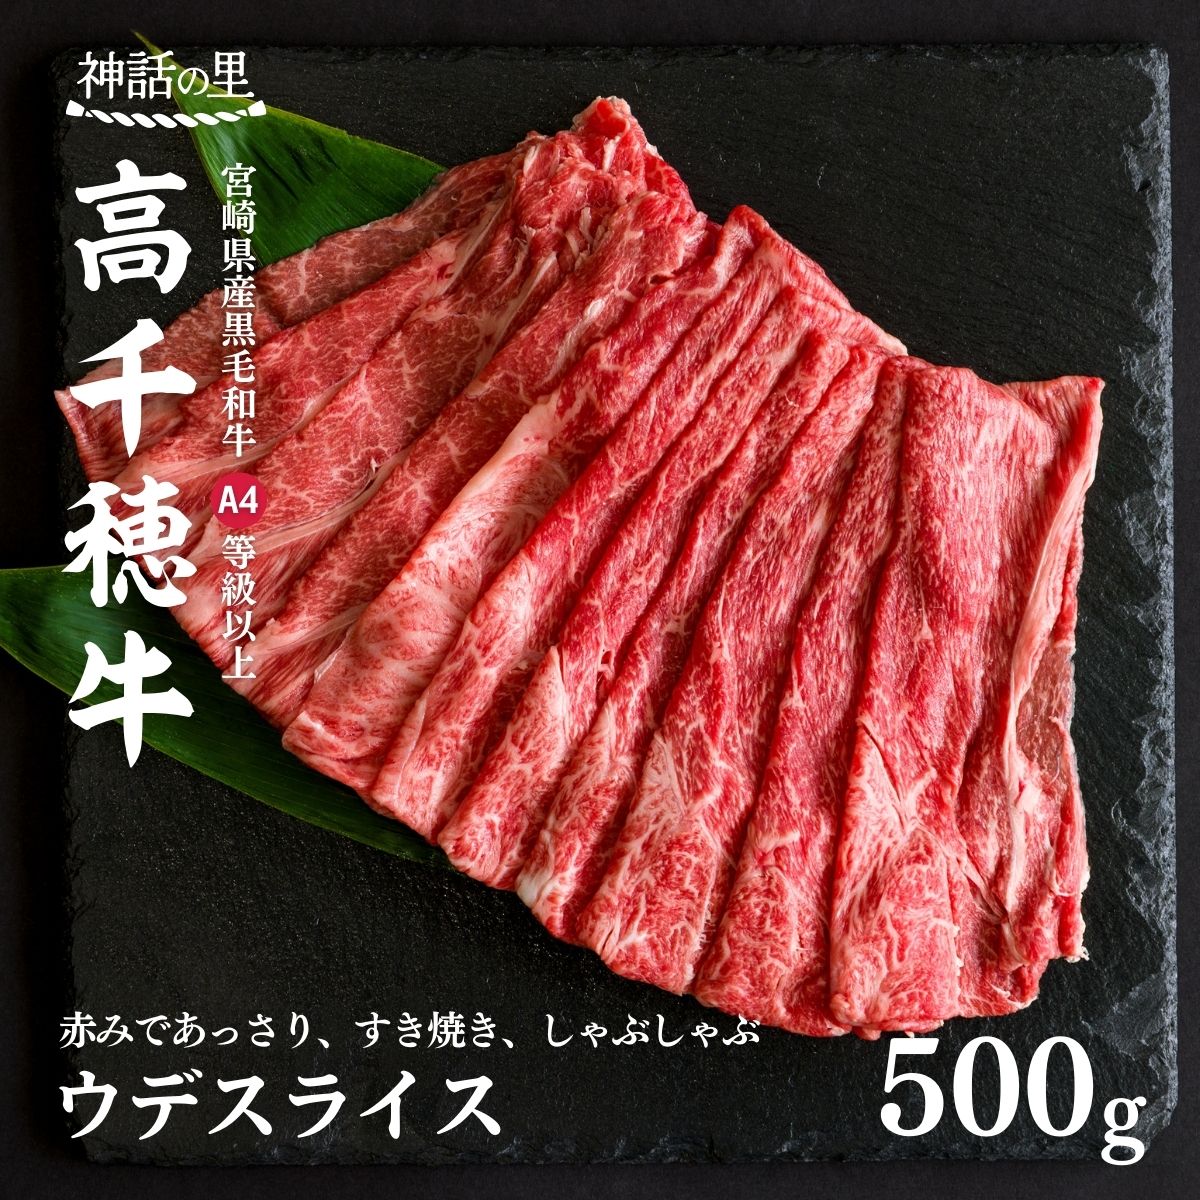 宮崎県産黒毛和牛A4等級以上 高千穂牛ウデスライスすき焼き用 500g すき焼き しゃぶしゃぶ 鍋